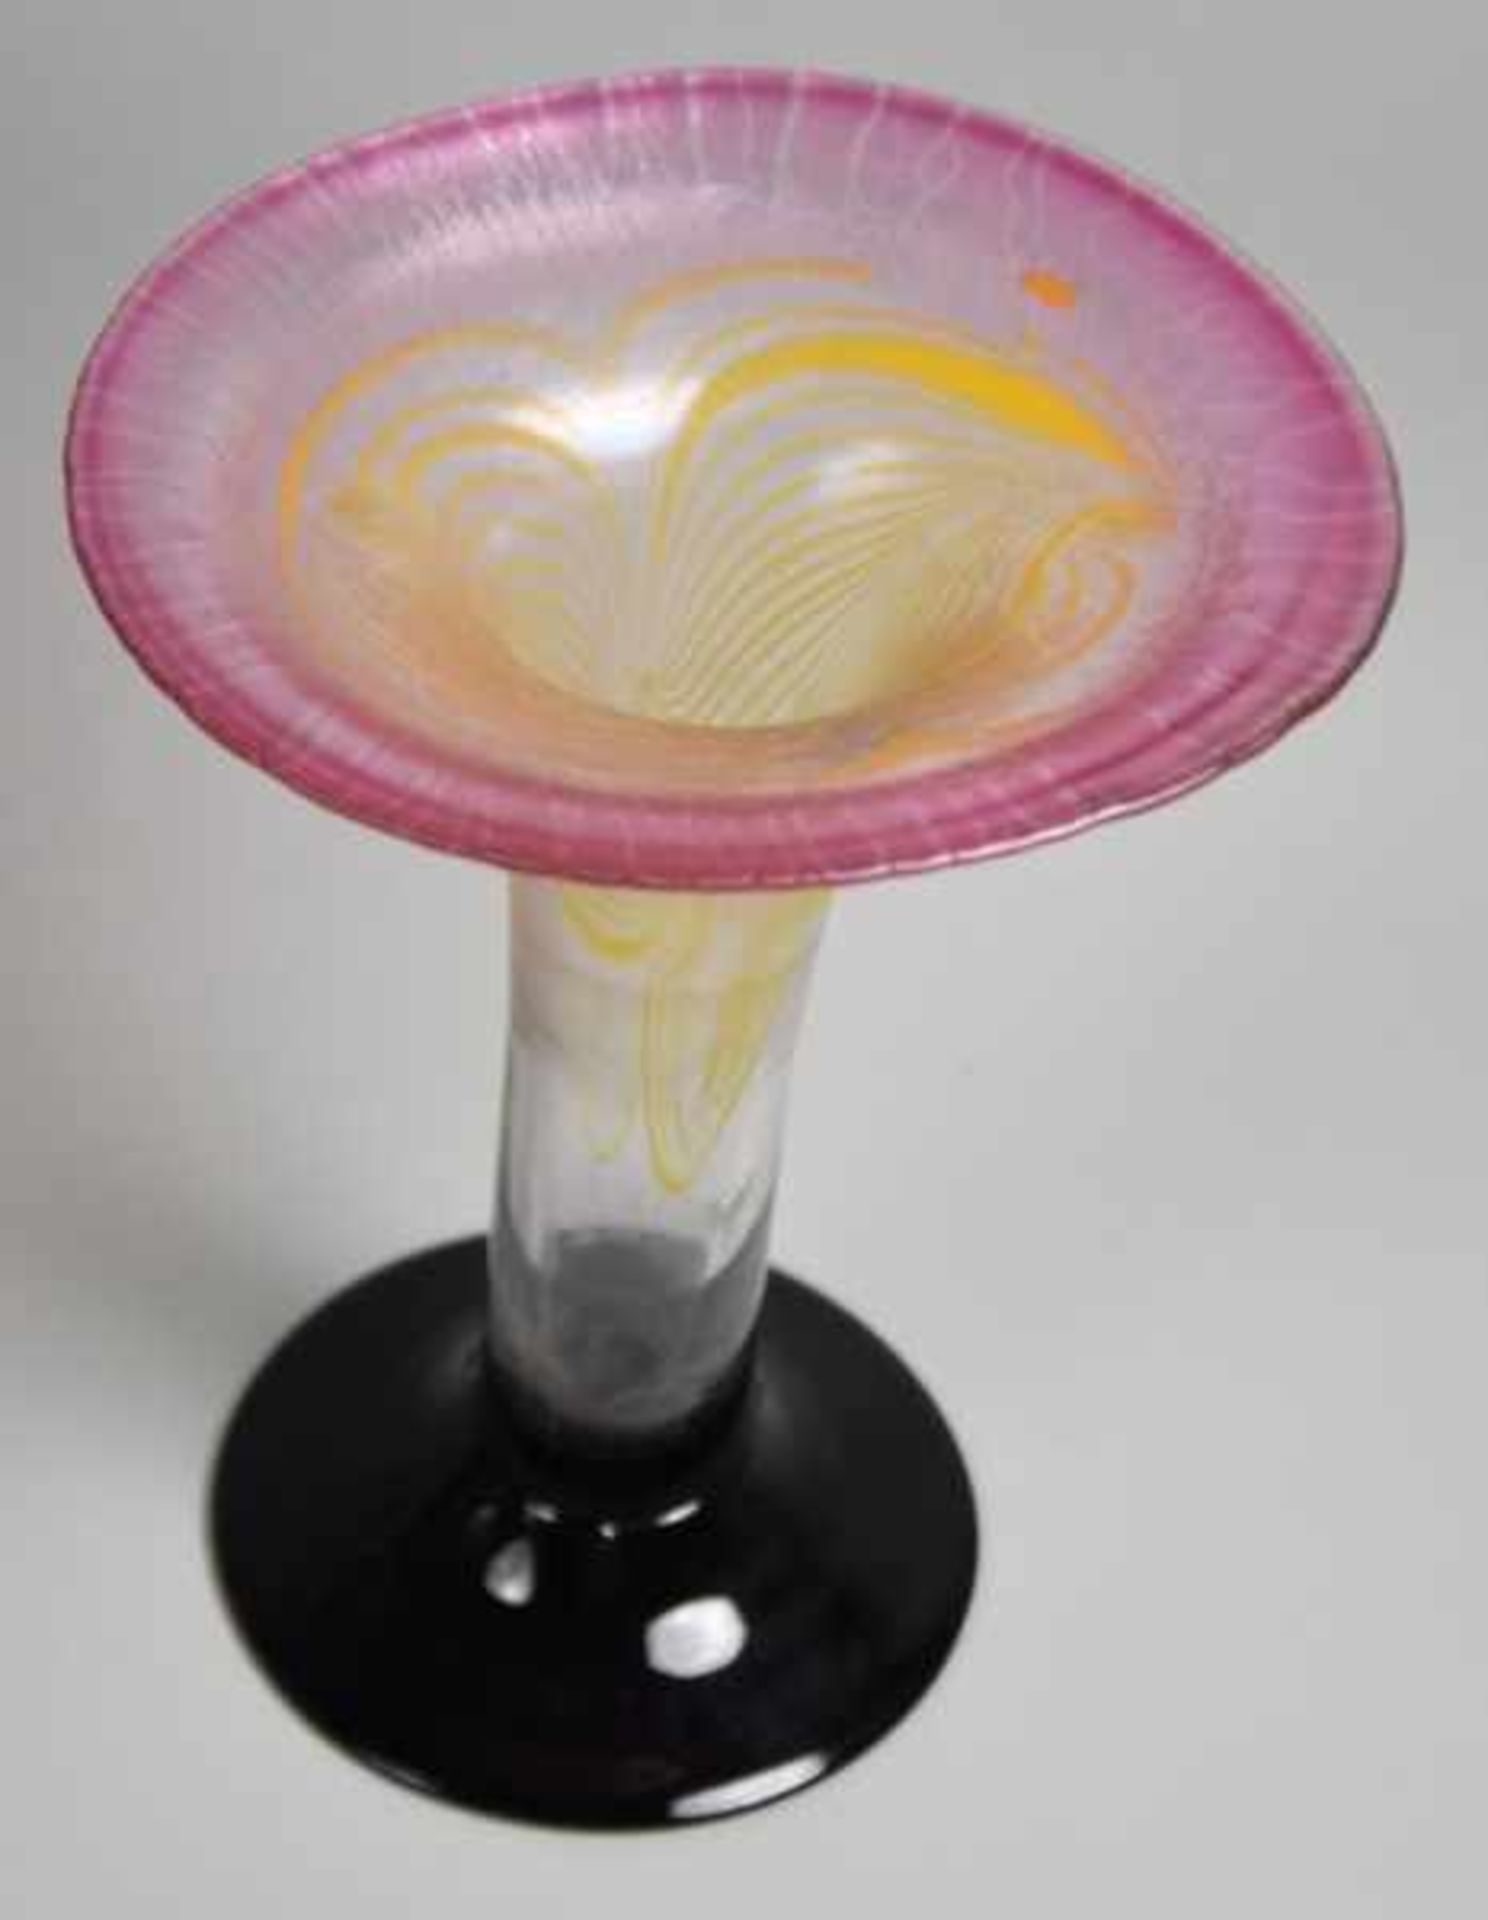 STUDIOGLAS EISCH Tulpenform mit ausgestelltem Rand, eingeschlossene gelbe Glasspiralen, rosa - Image 2 of 3